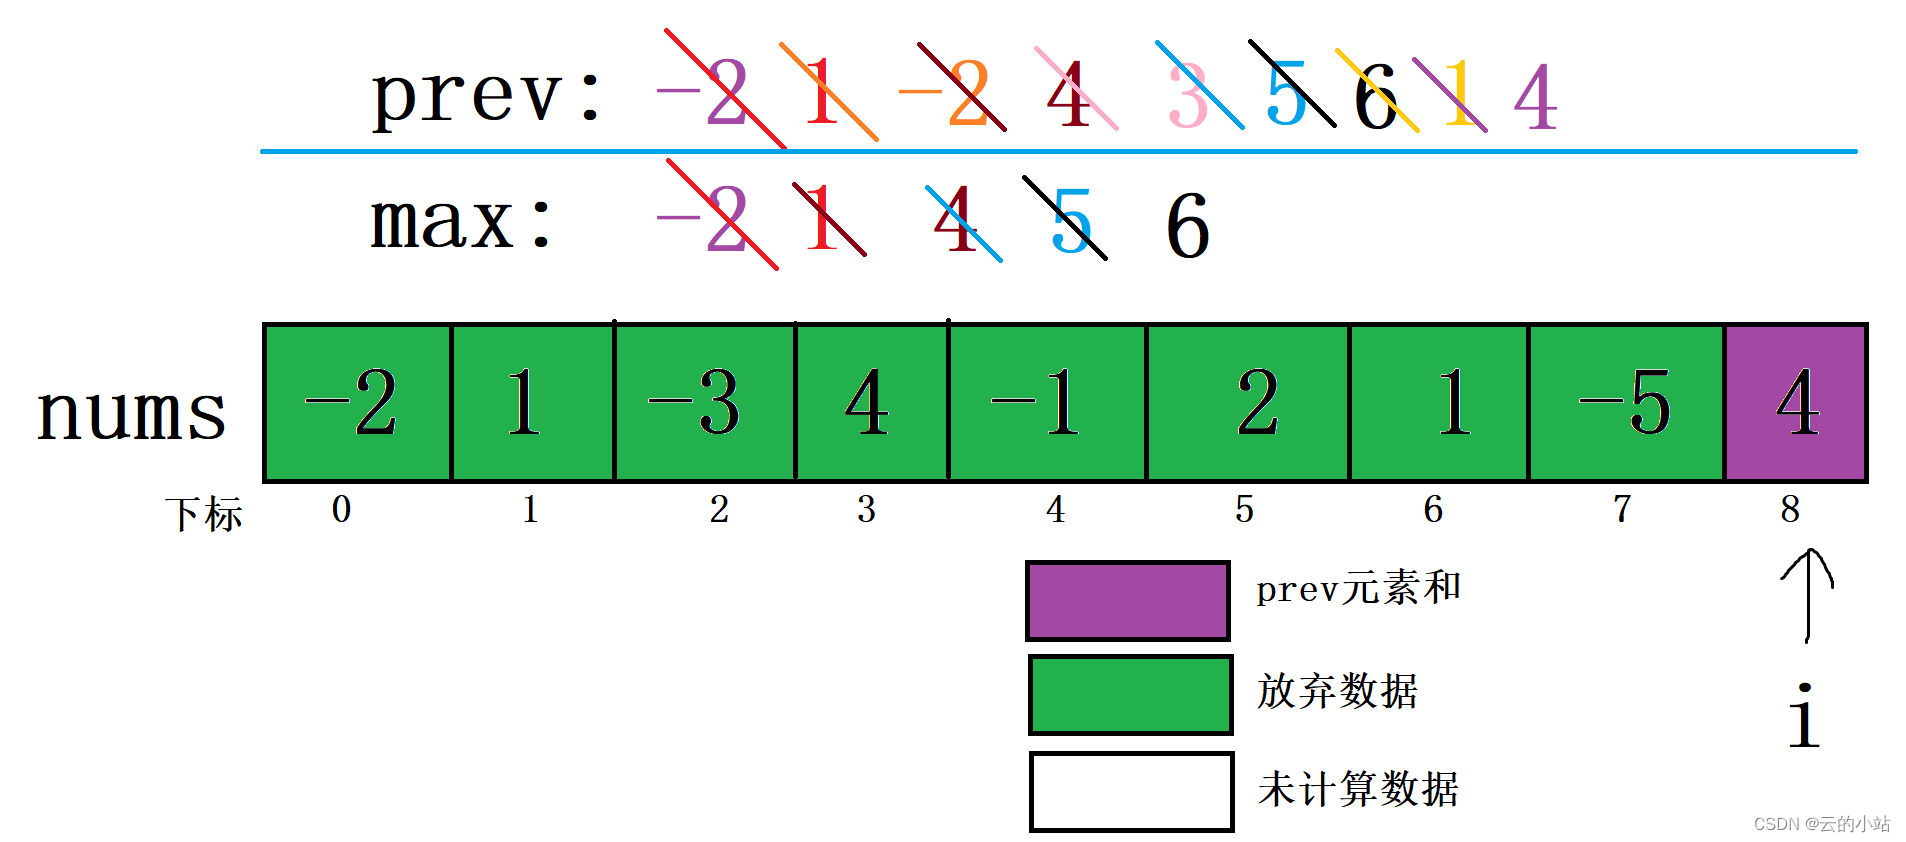 剑指 Offer 42. 连续子数组的最大和：C语言解法